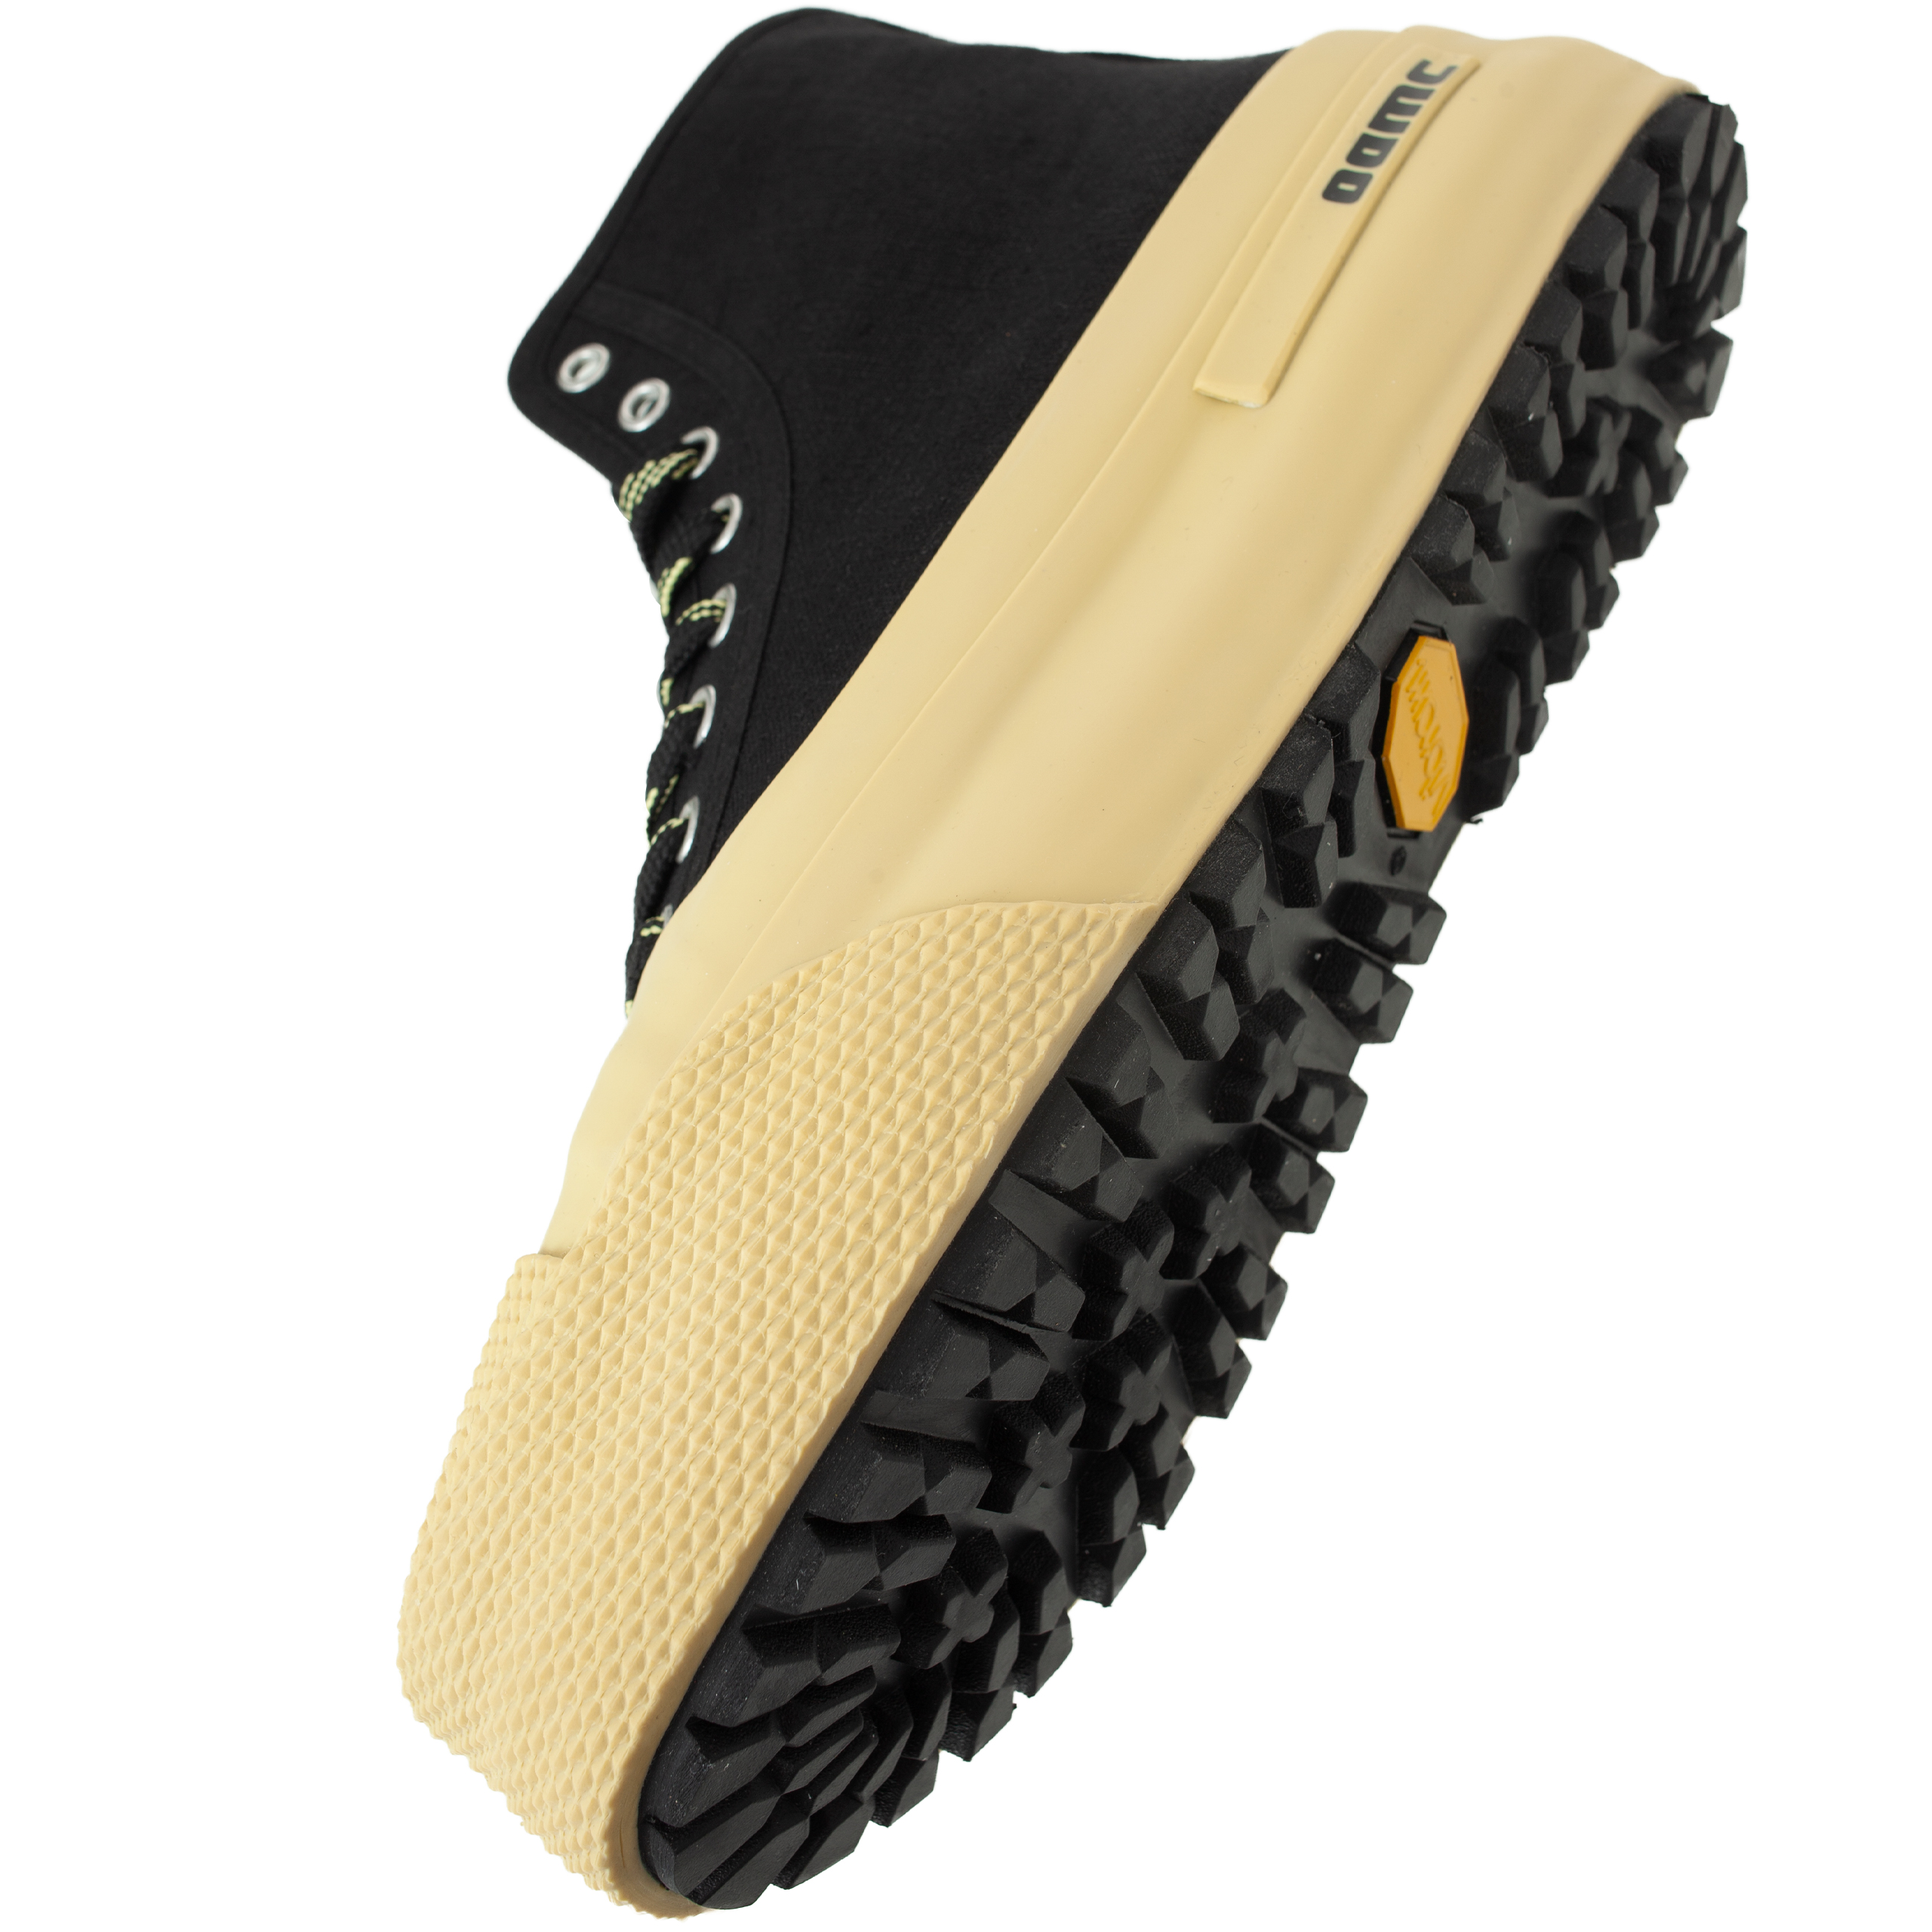 Buy OAMC men yellow ridge vulc high top sneakers for $595 online